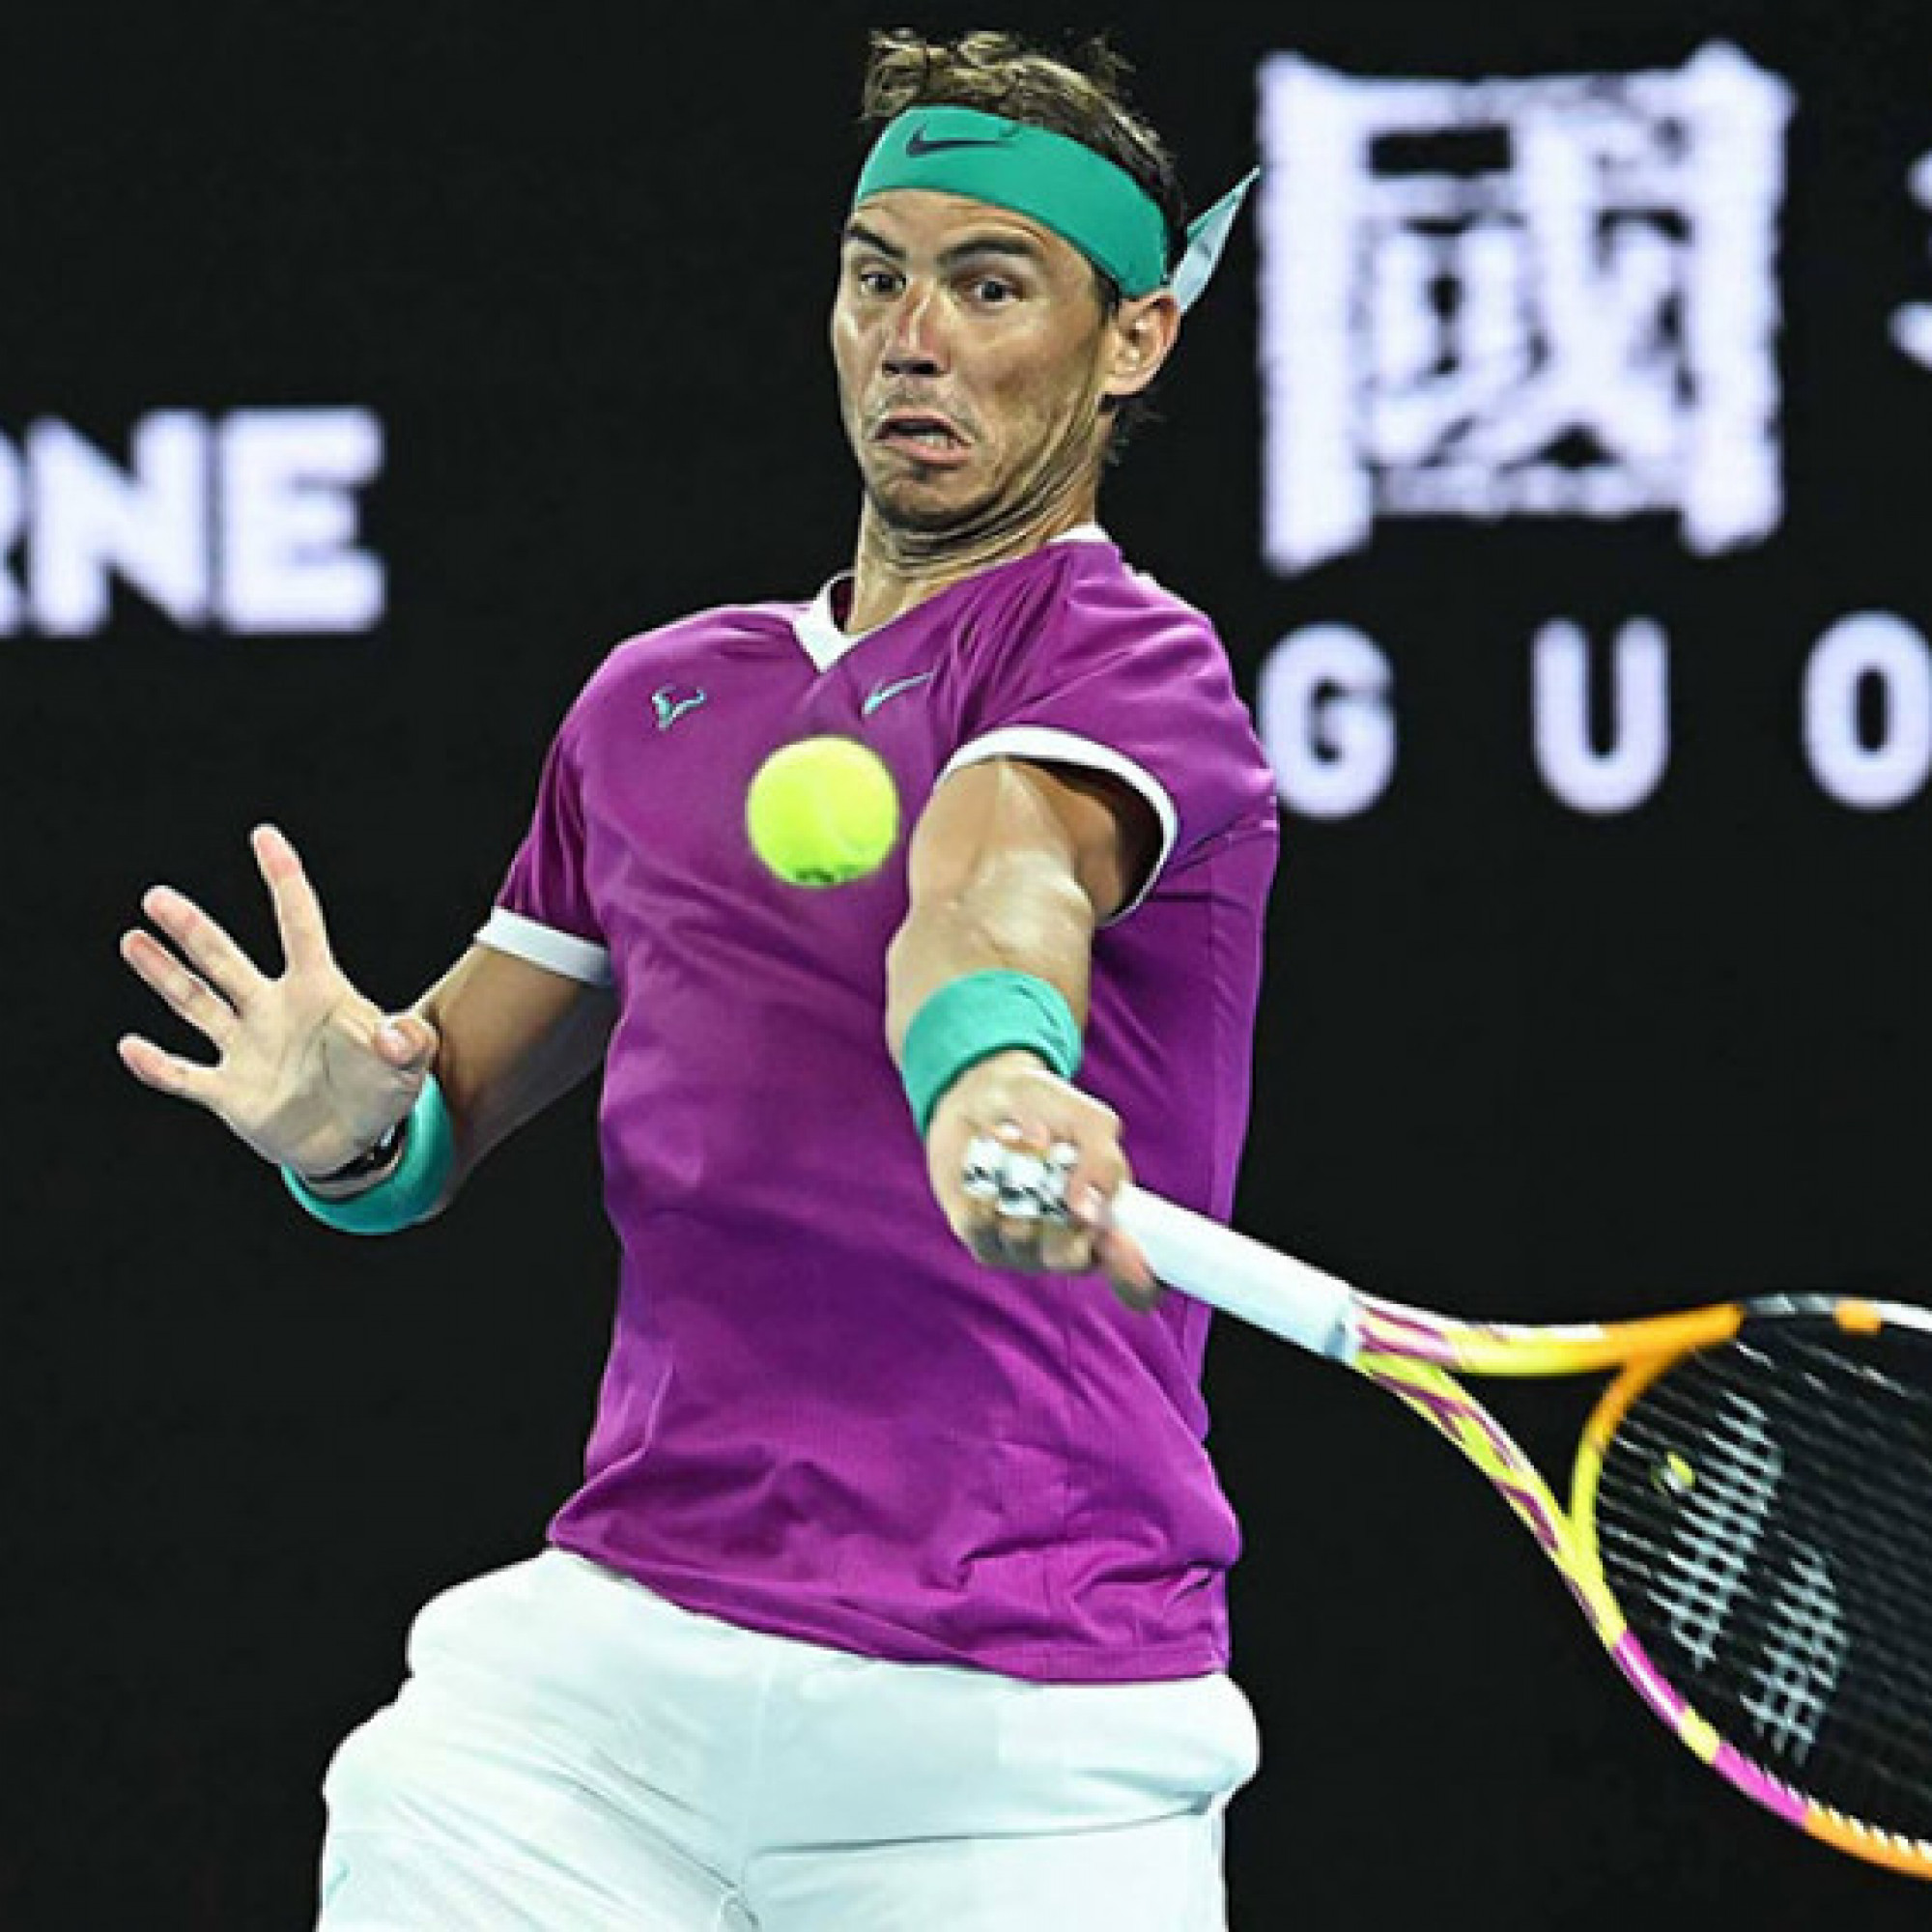  - Trực tiếp tennis Shapovalov - Nadal: "Vua đất nện" thắng set 1 (Tứ kết Australian Open)